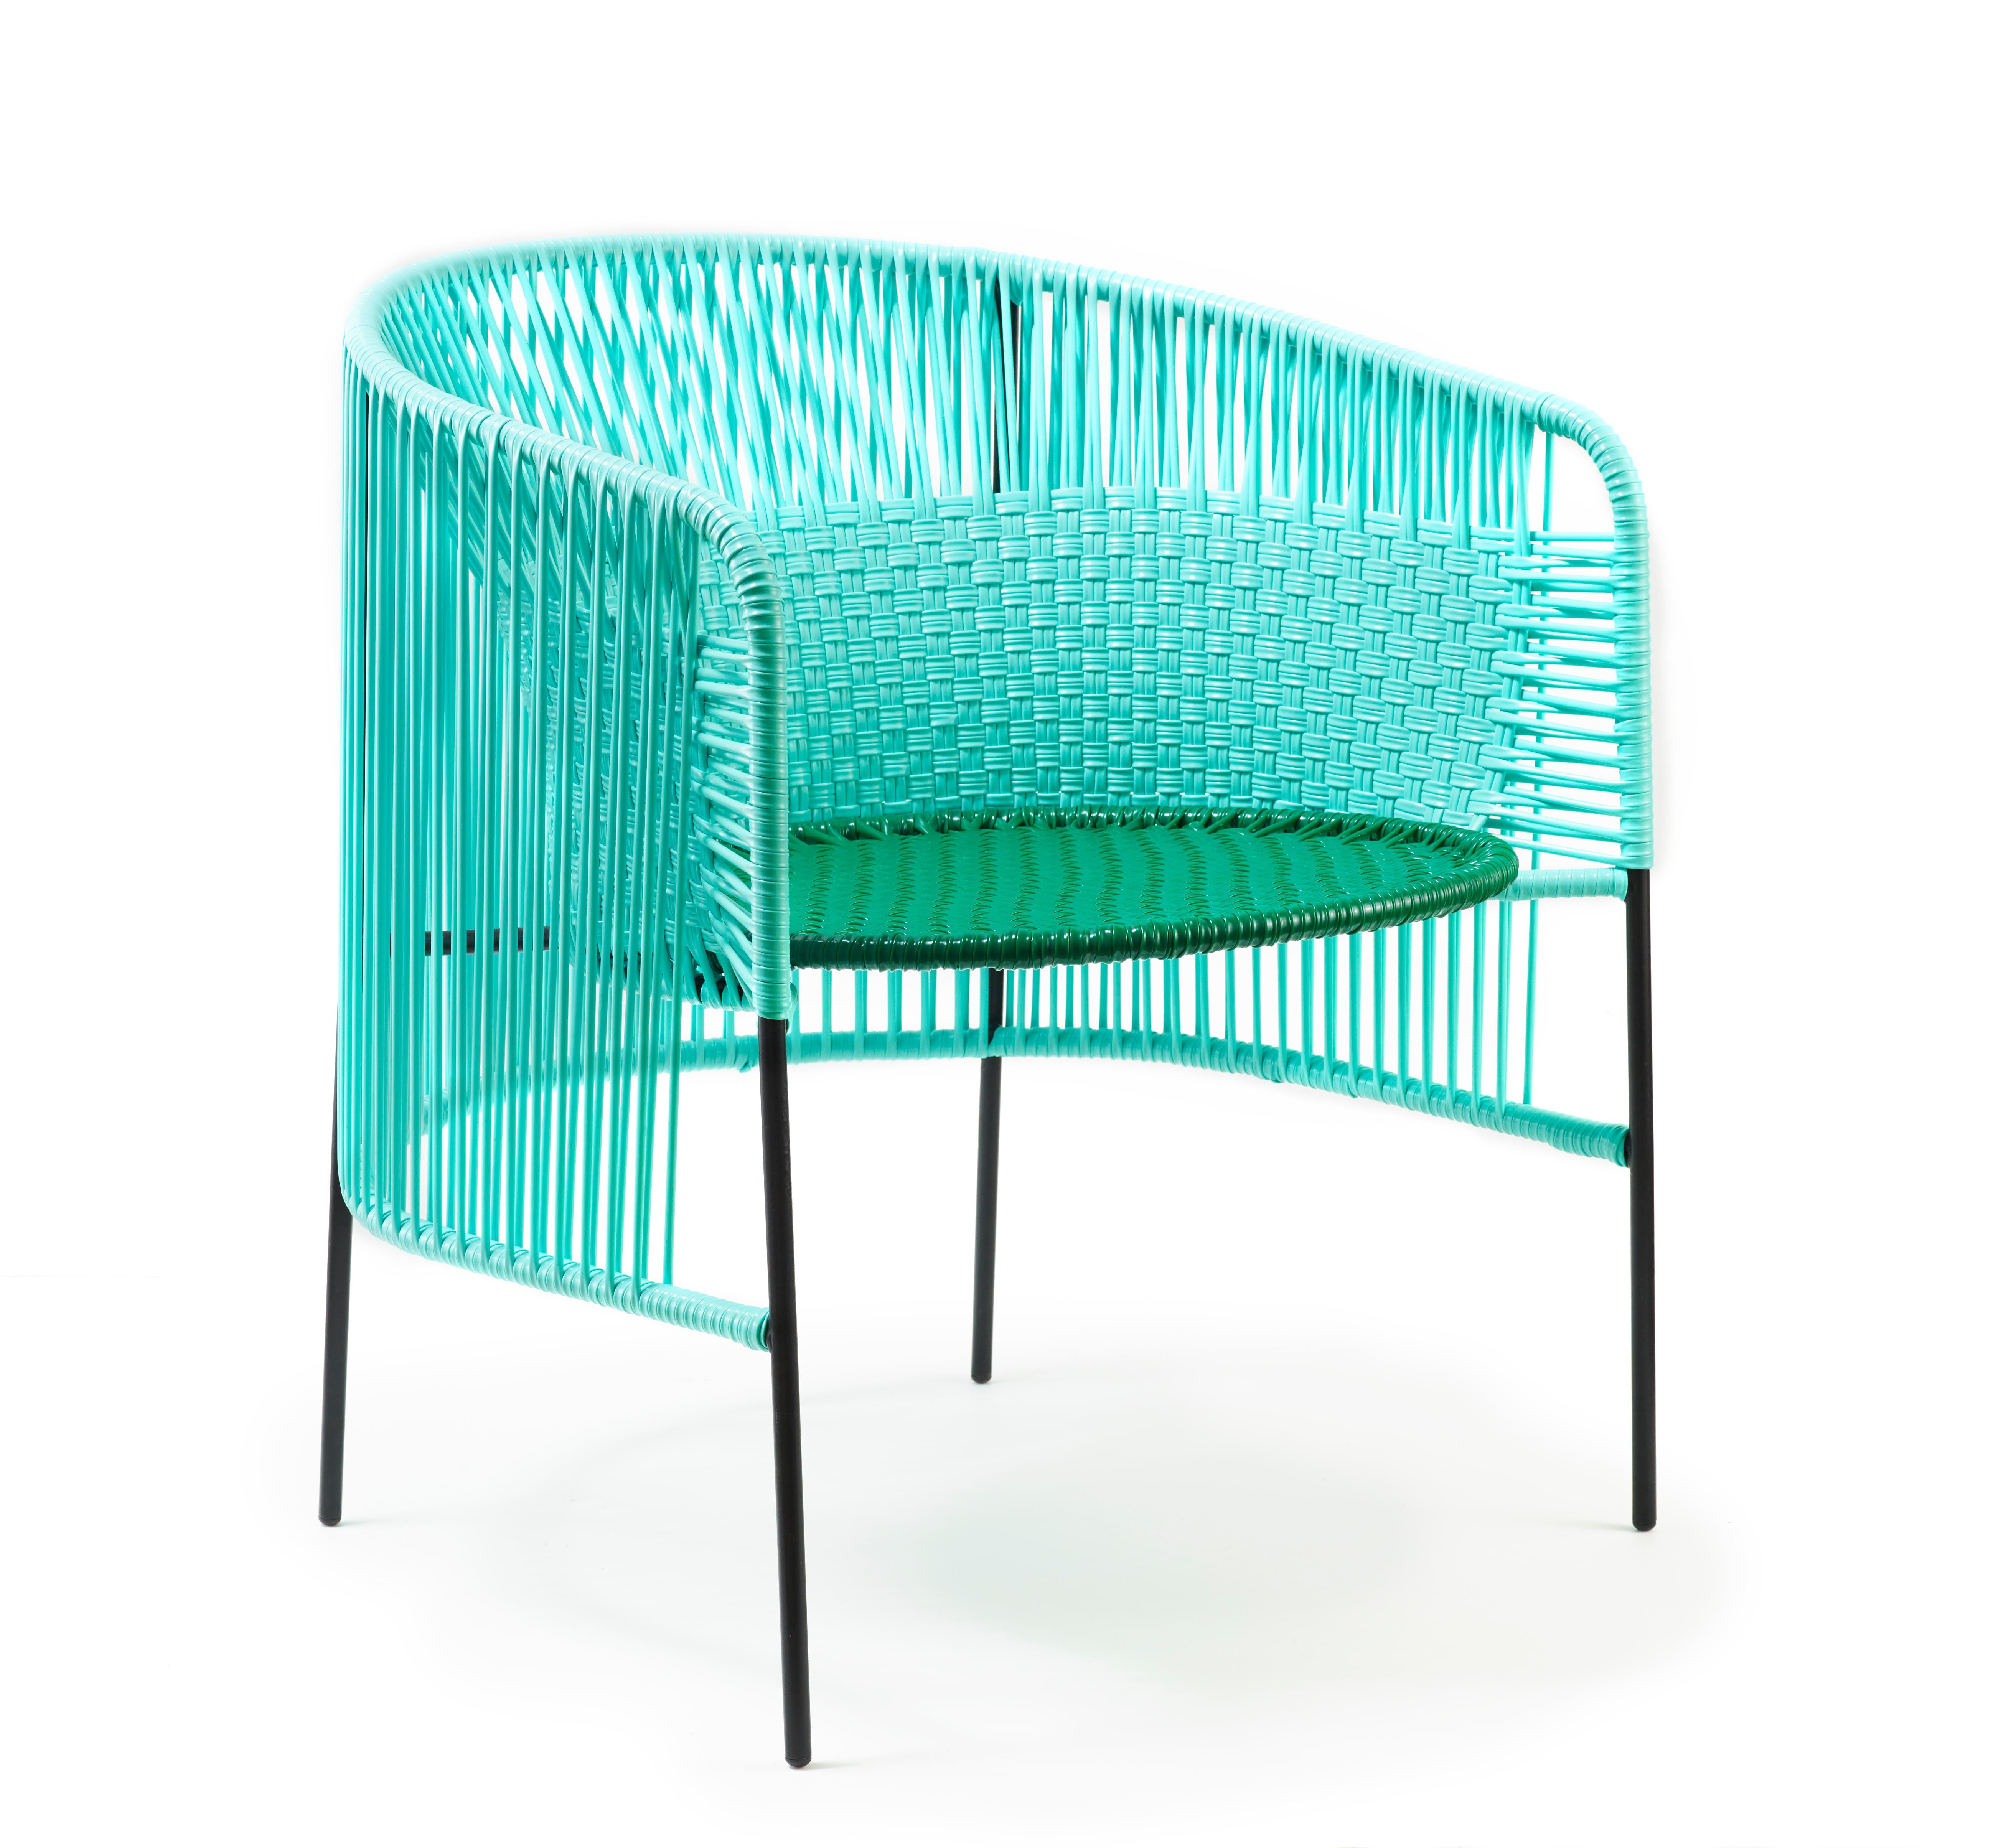 4er Set mint caribe lounge chair von Sebastian Herkner
MATERIAL: verzinktes und pulverbeschichtetes Stahlrohr. PVC-Schnüre werden aus recyceltem Kunststoff hergestellt.
Technik: Hergestellt aus recyceltem Kunststoff und gewebt von lokalen